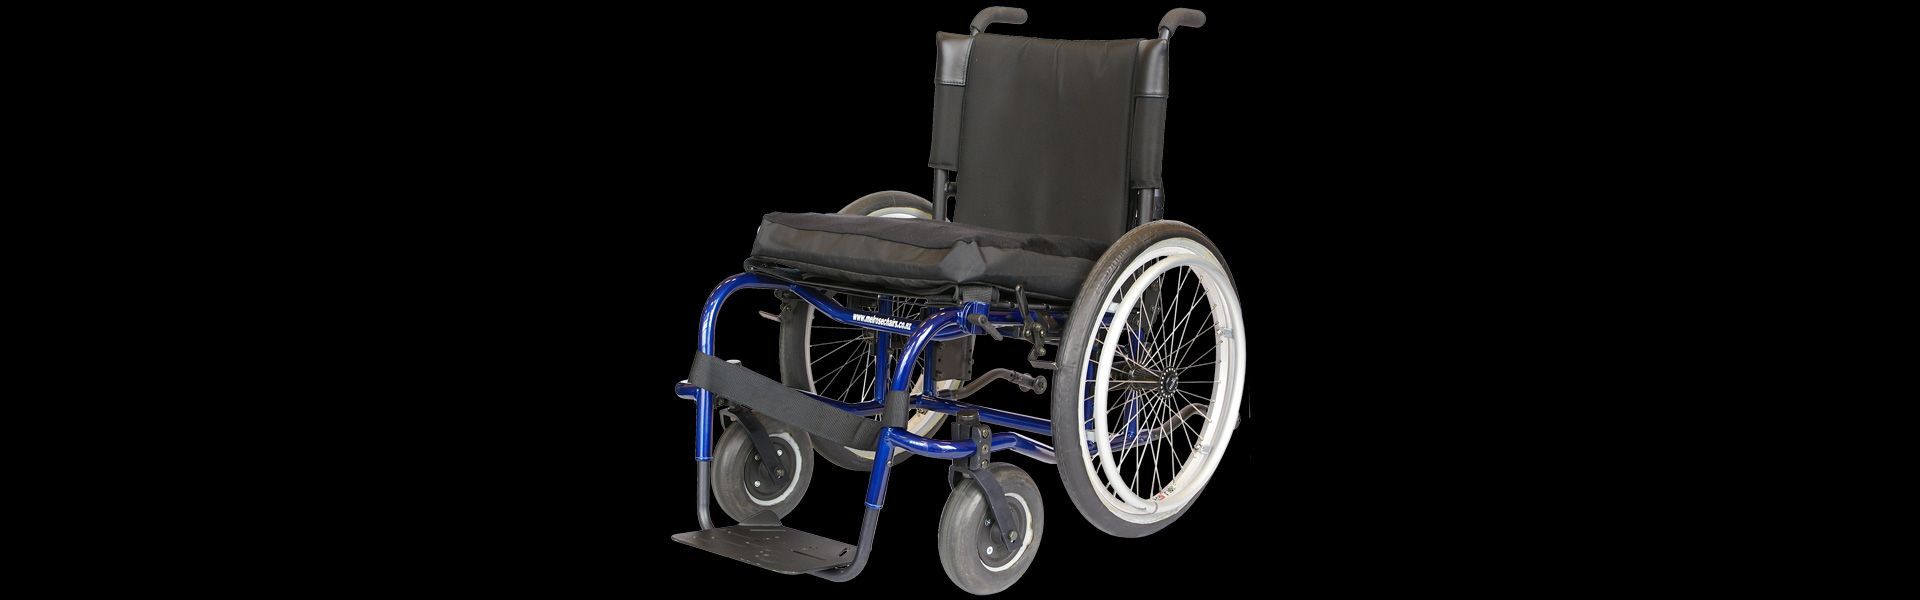 Bowls Sports Wheelchair